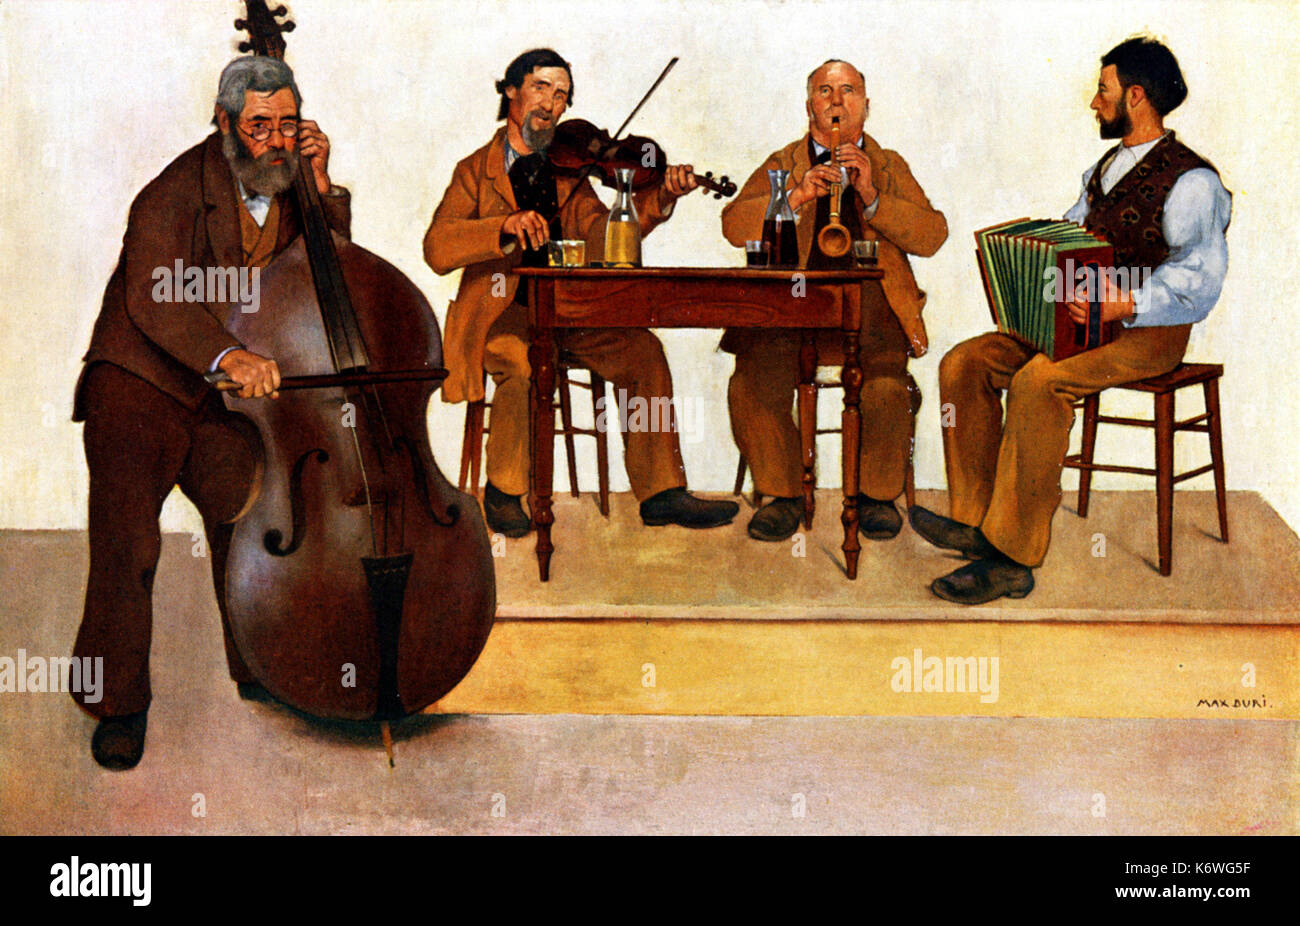 Double Bass Player im Schweizer Dorf band, Geiger, Klarinettist & Akkordeon spieler. Von Max Buri. 1868 - 1915. Quartett. Stockfoto